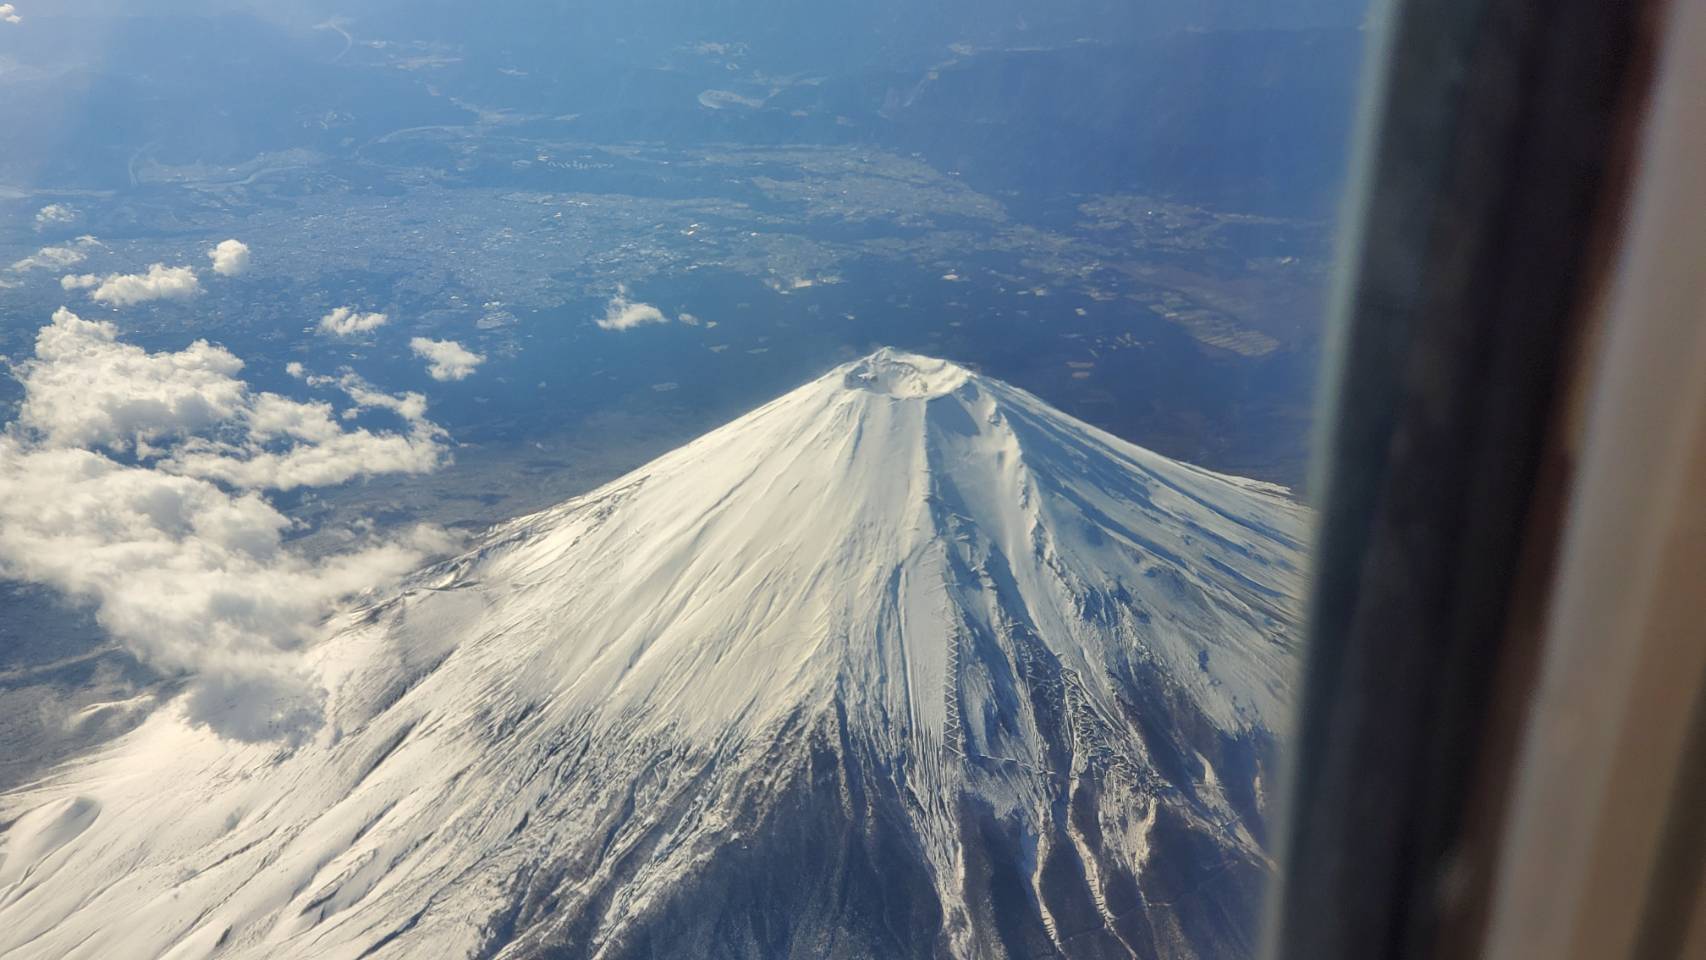 富士山ビューシリーズ Jal 富士山上空を通過 井上登の70代人生論 仕事 地域 家庭 個人 4つのバランス人生